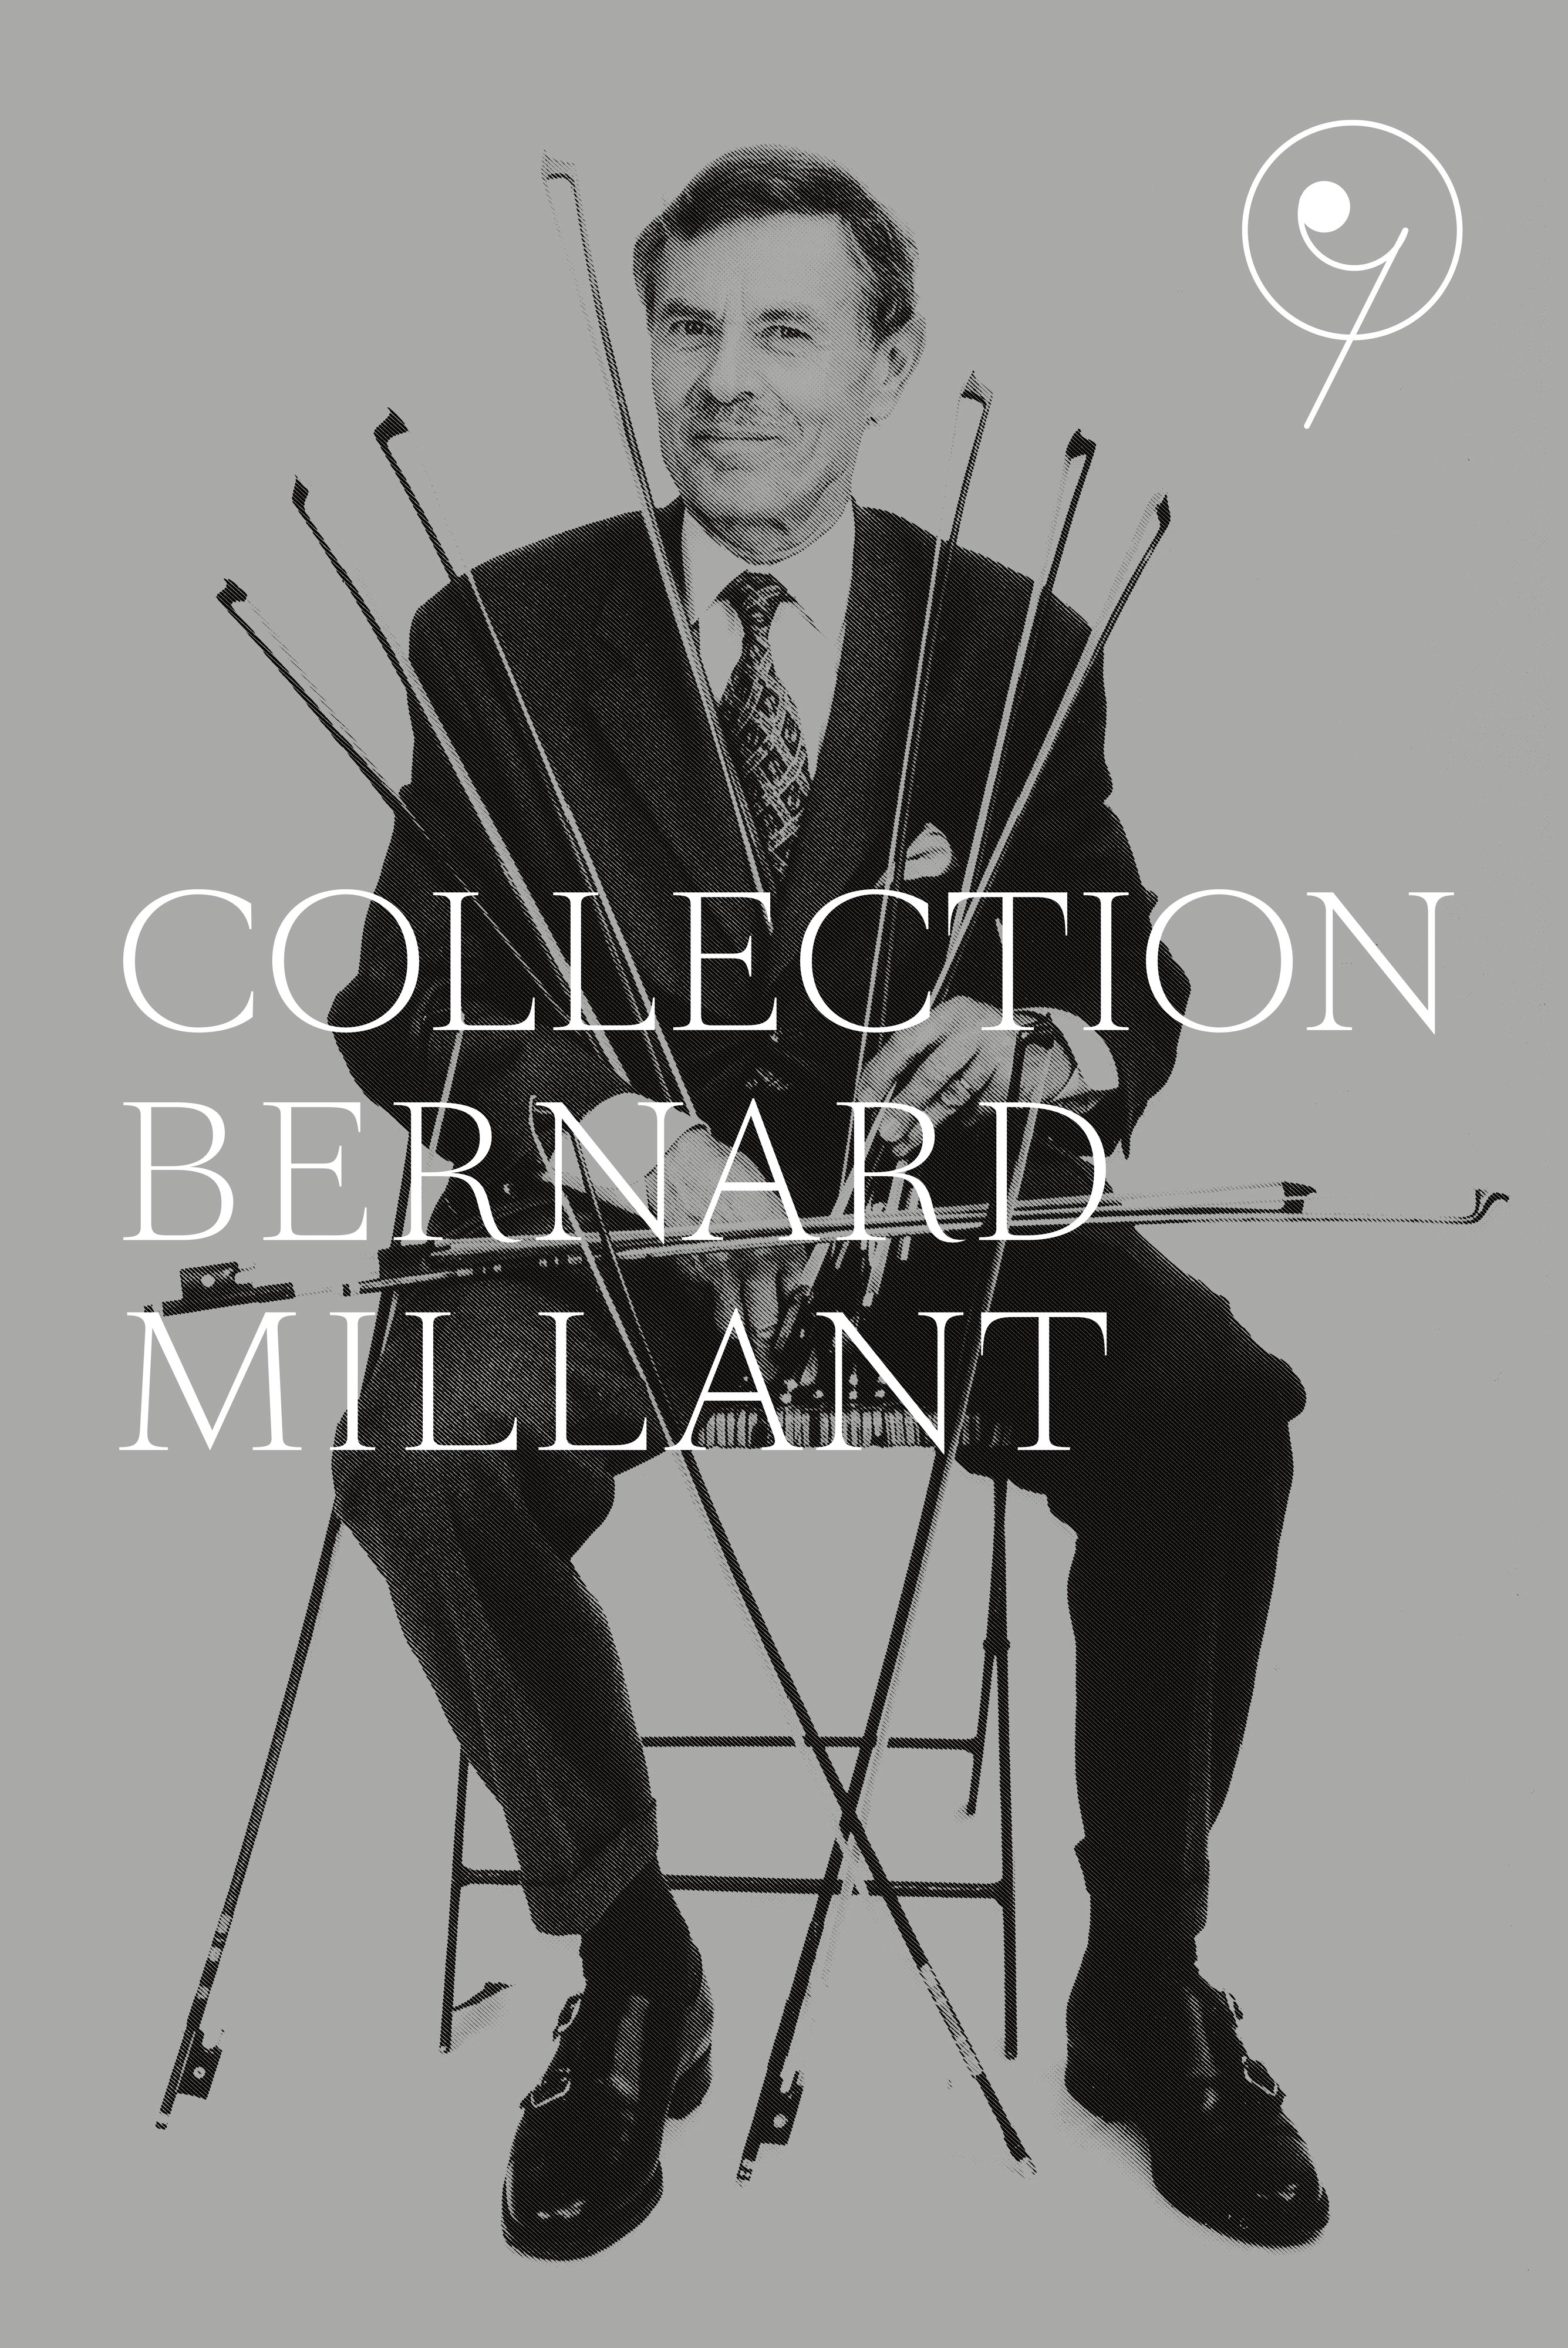 Portrait de Bernard Millant réalisé par Guy Vivien en 2000 à Musicora pour le lancement du livre « L’Archet ».